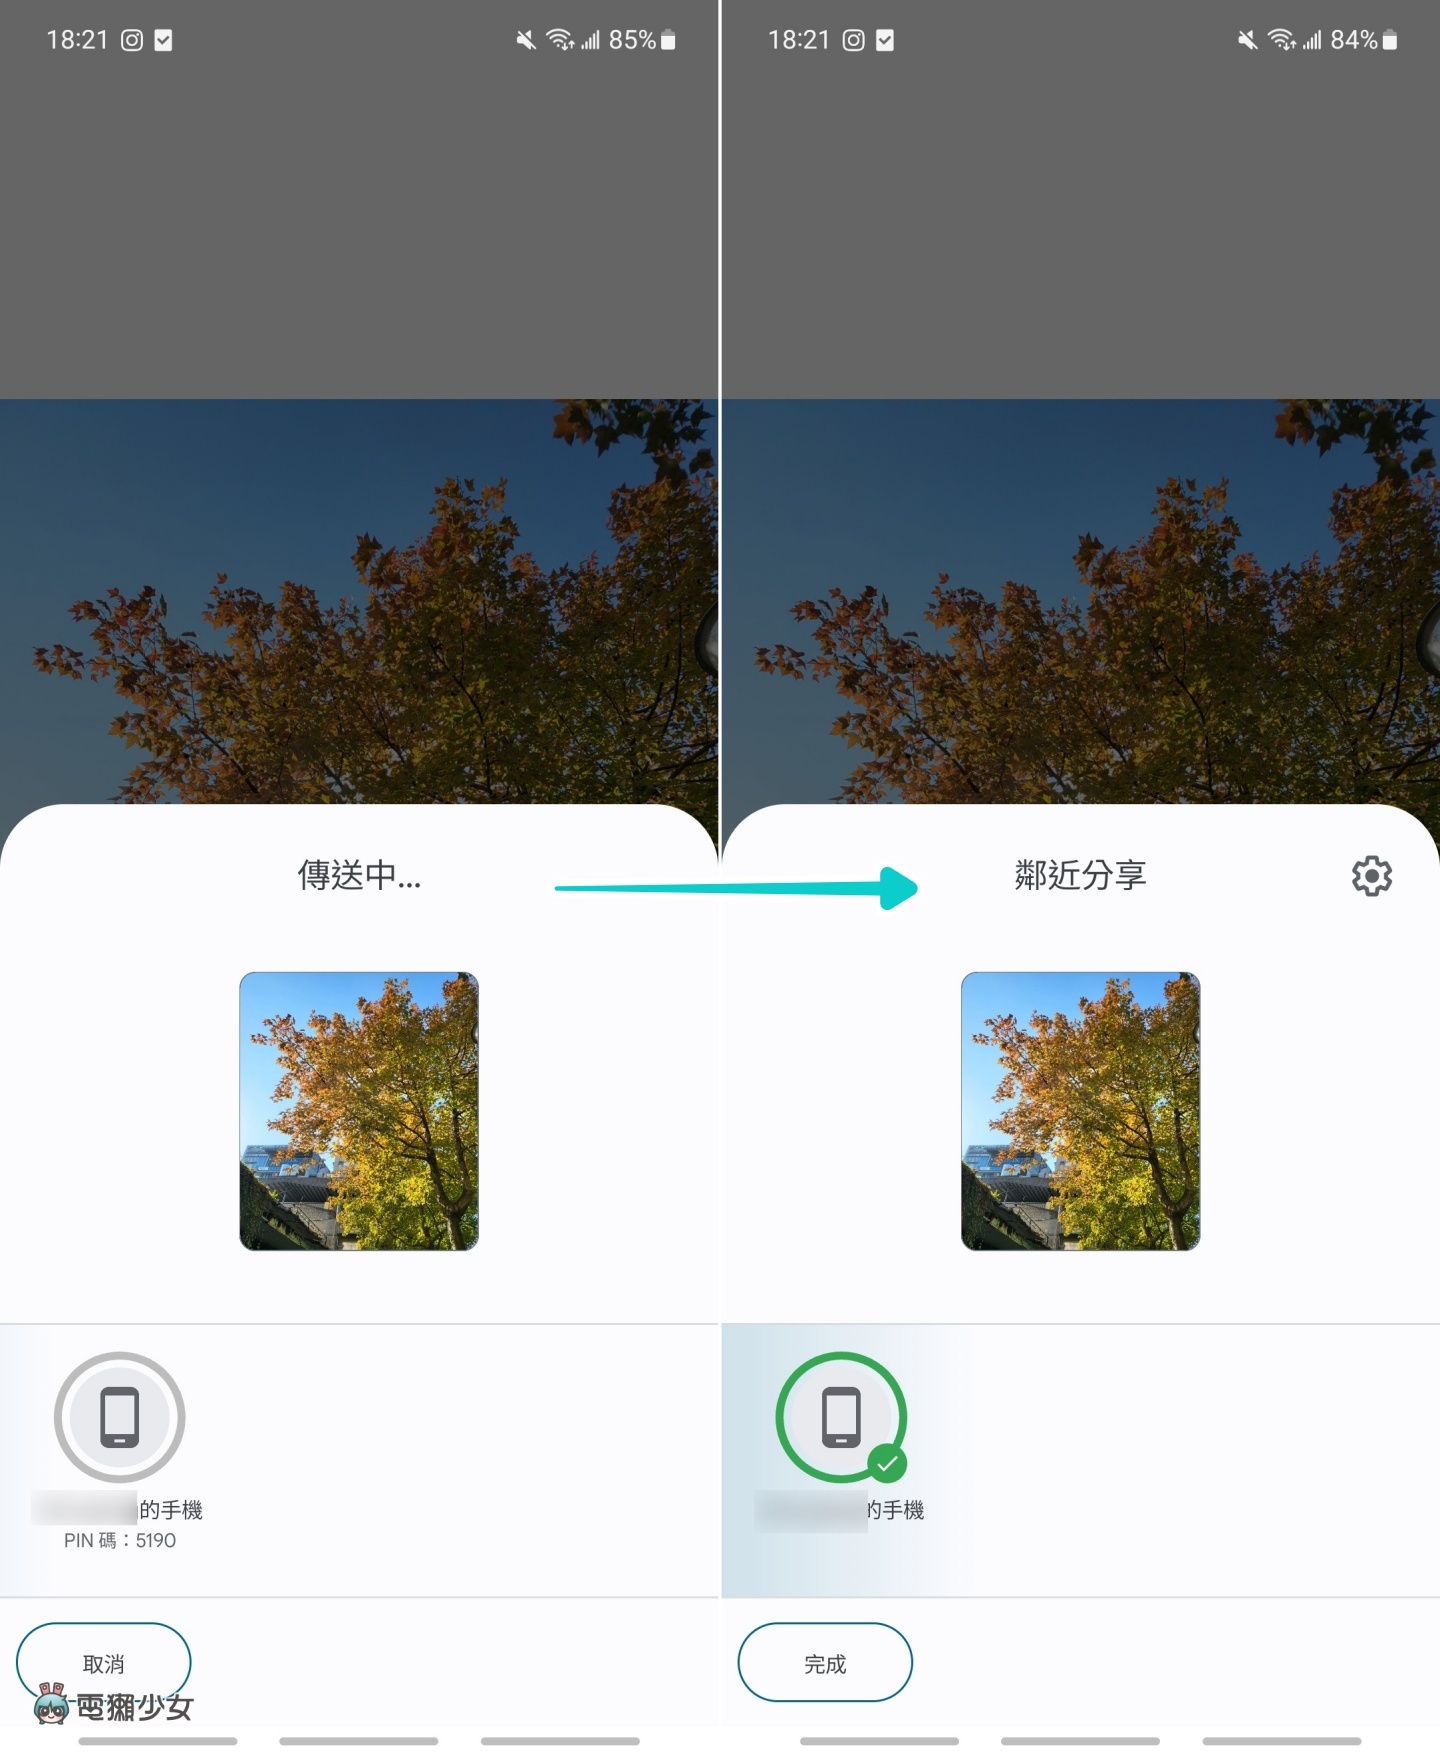 蘋果有 AirDrop 那安卓呢？實測『 鄰近分享 』功能 互傳照片速度夠快嗎？